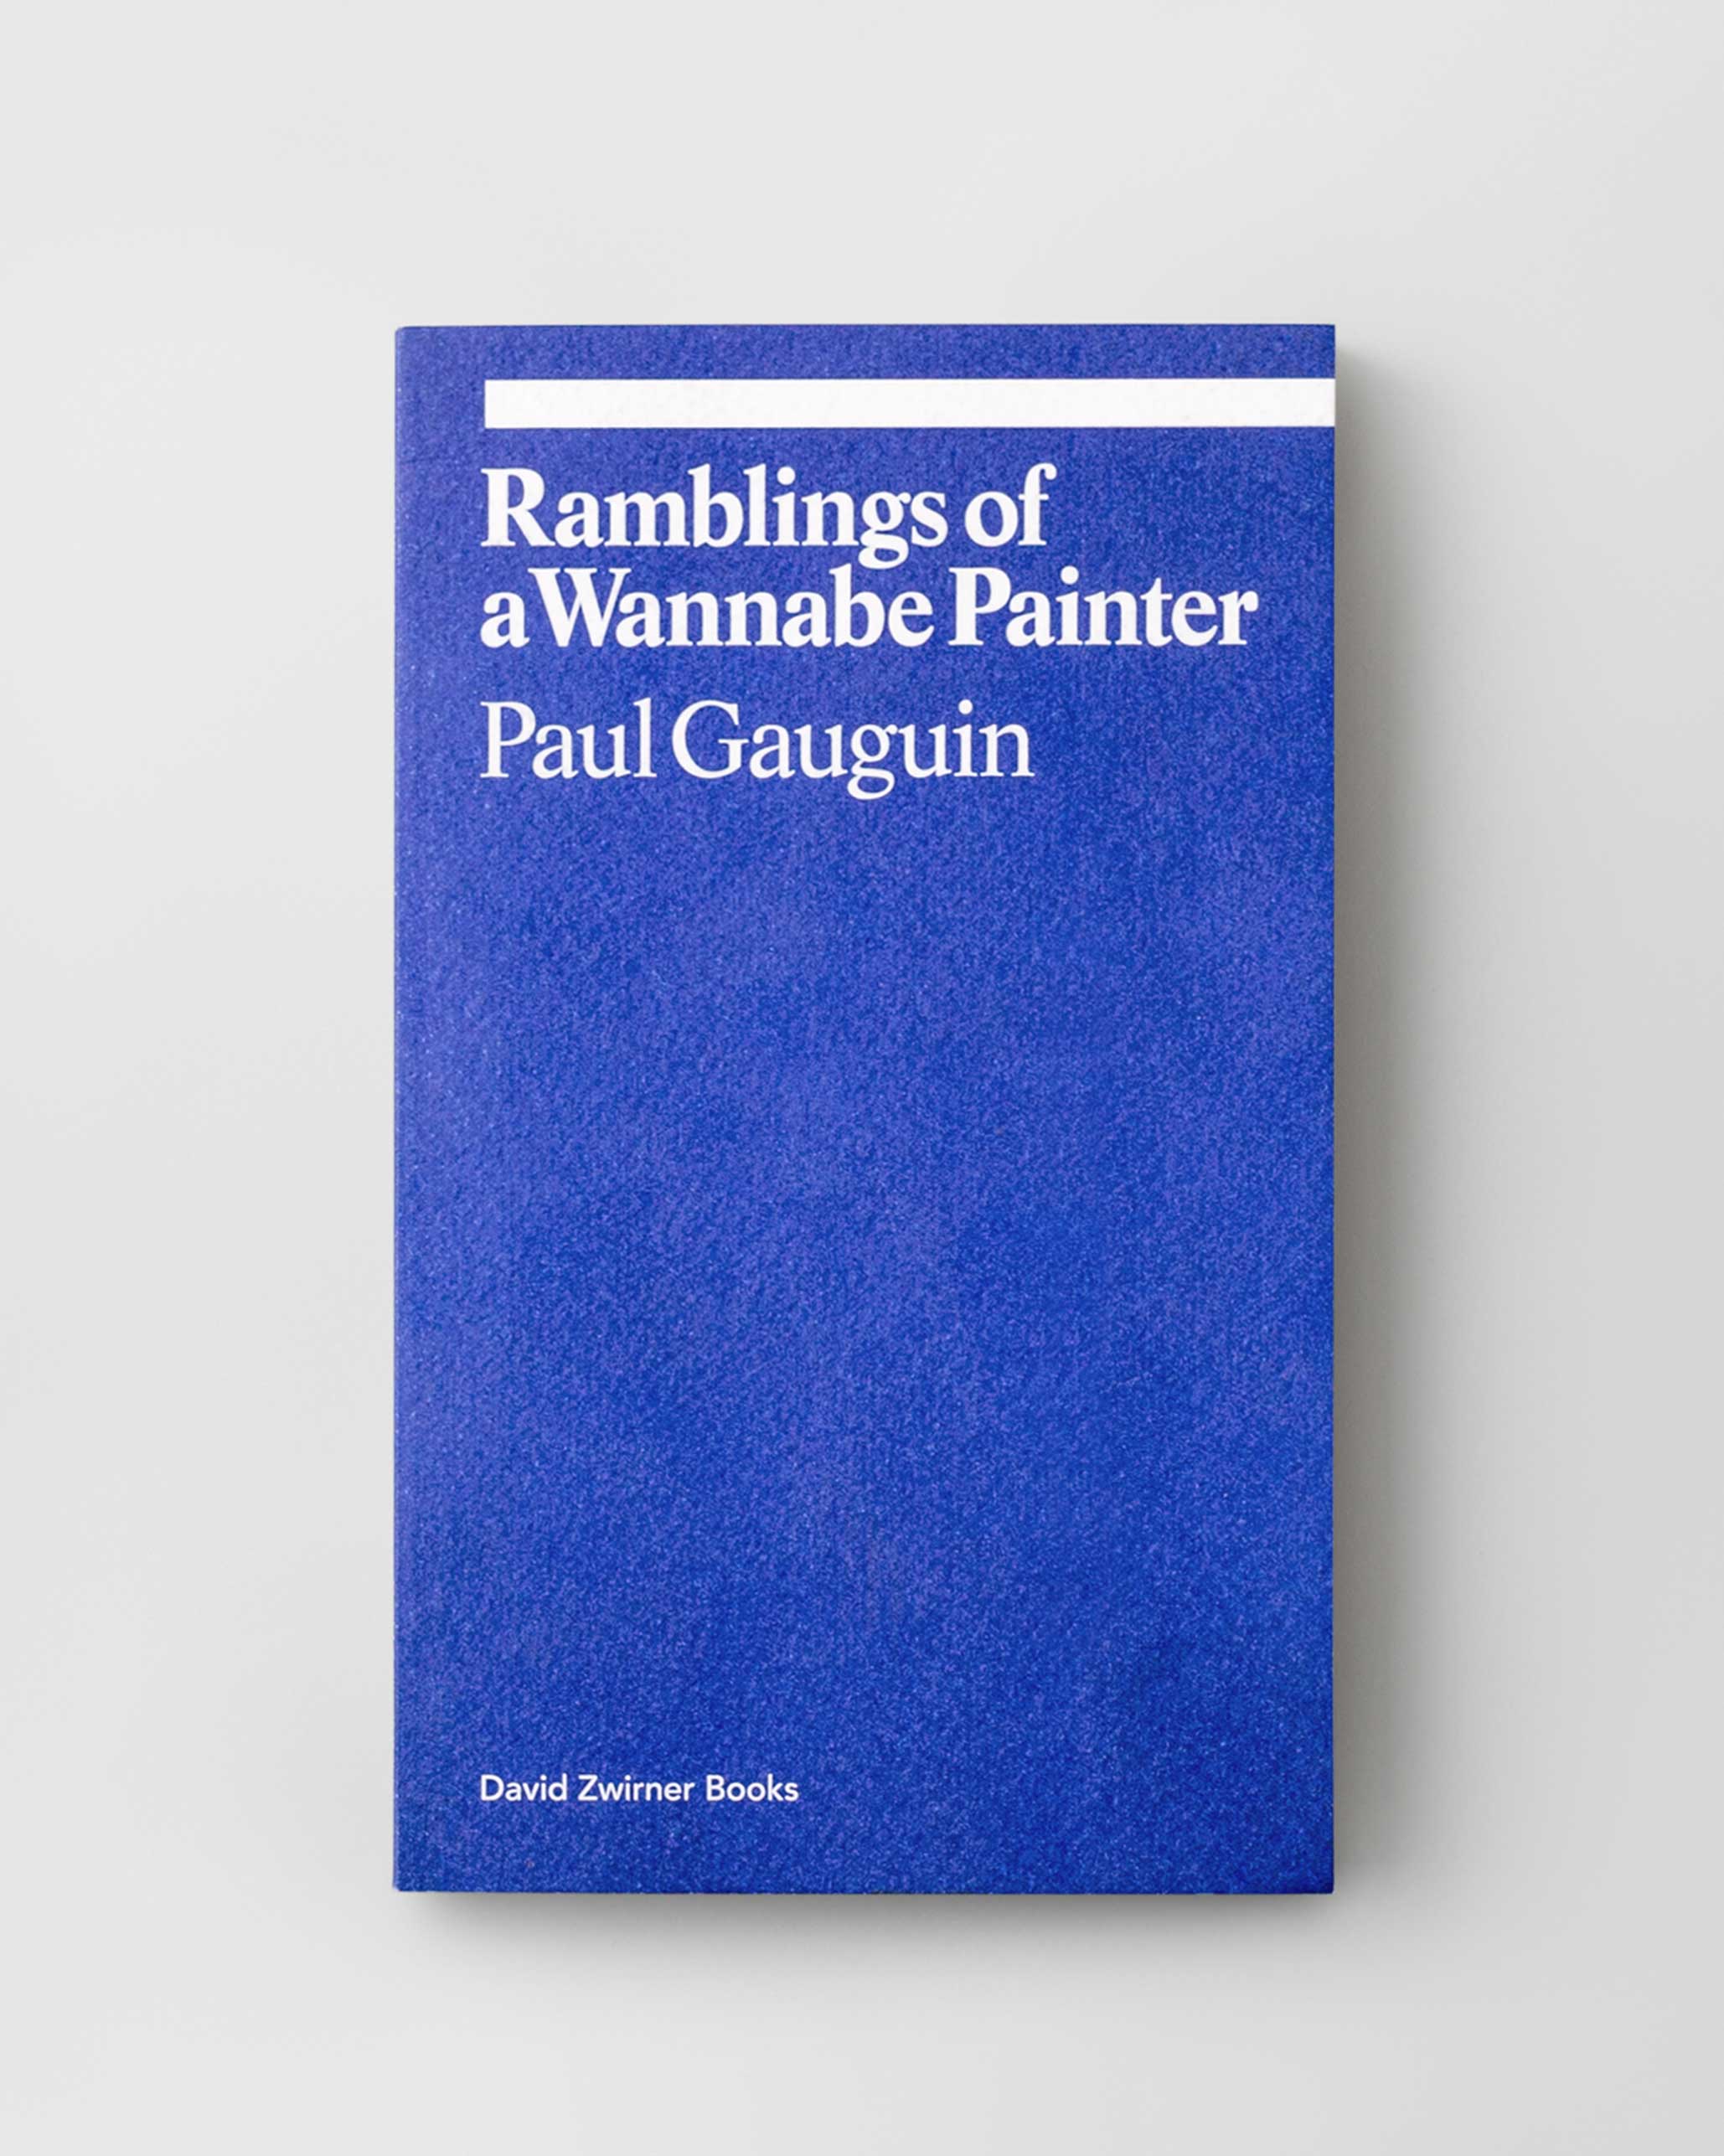 Paul Gauguin: Ramblings of a Wannabe Painter